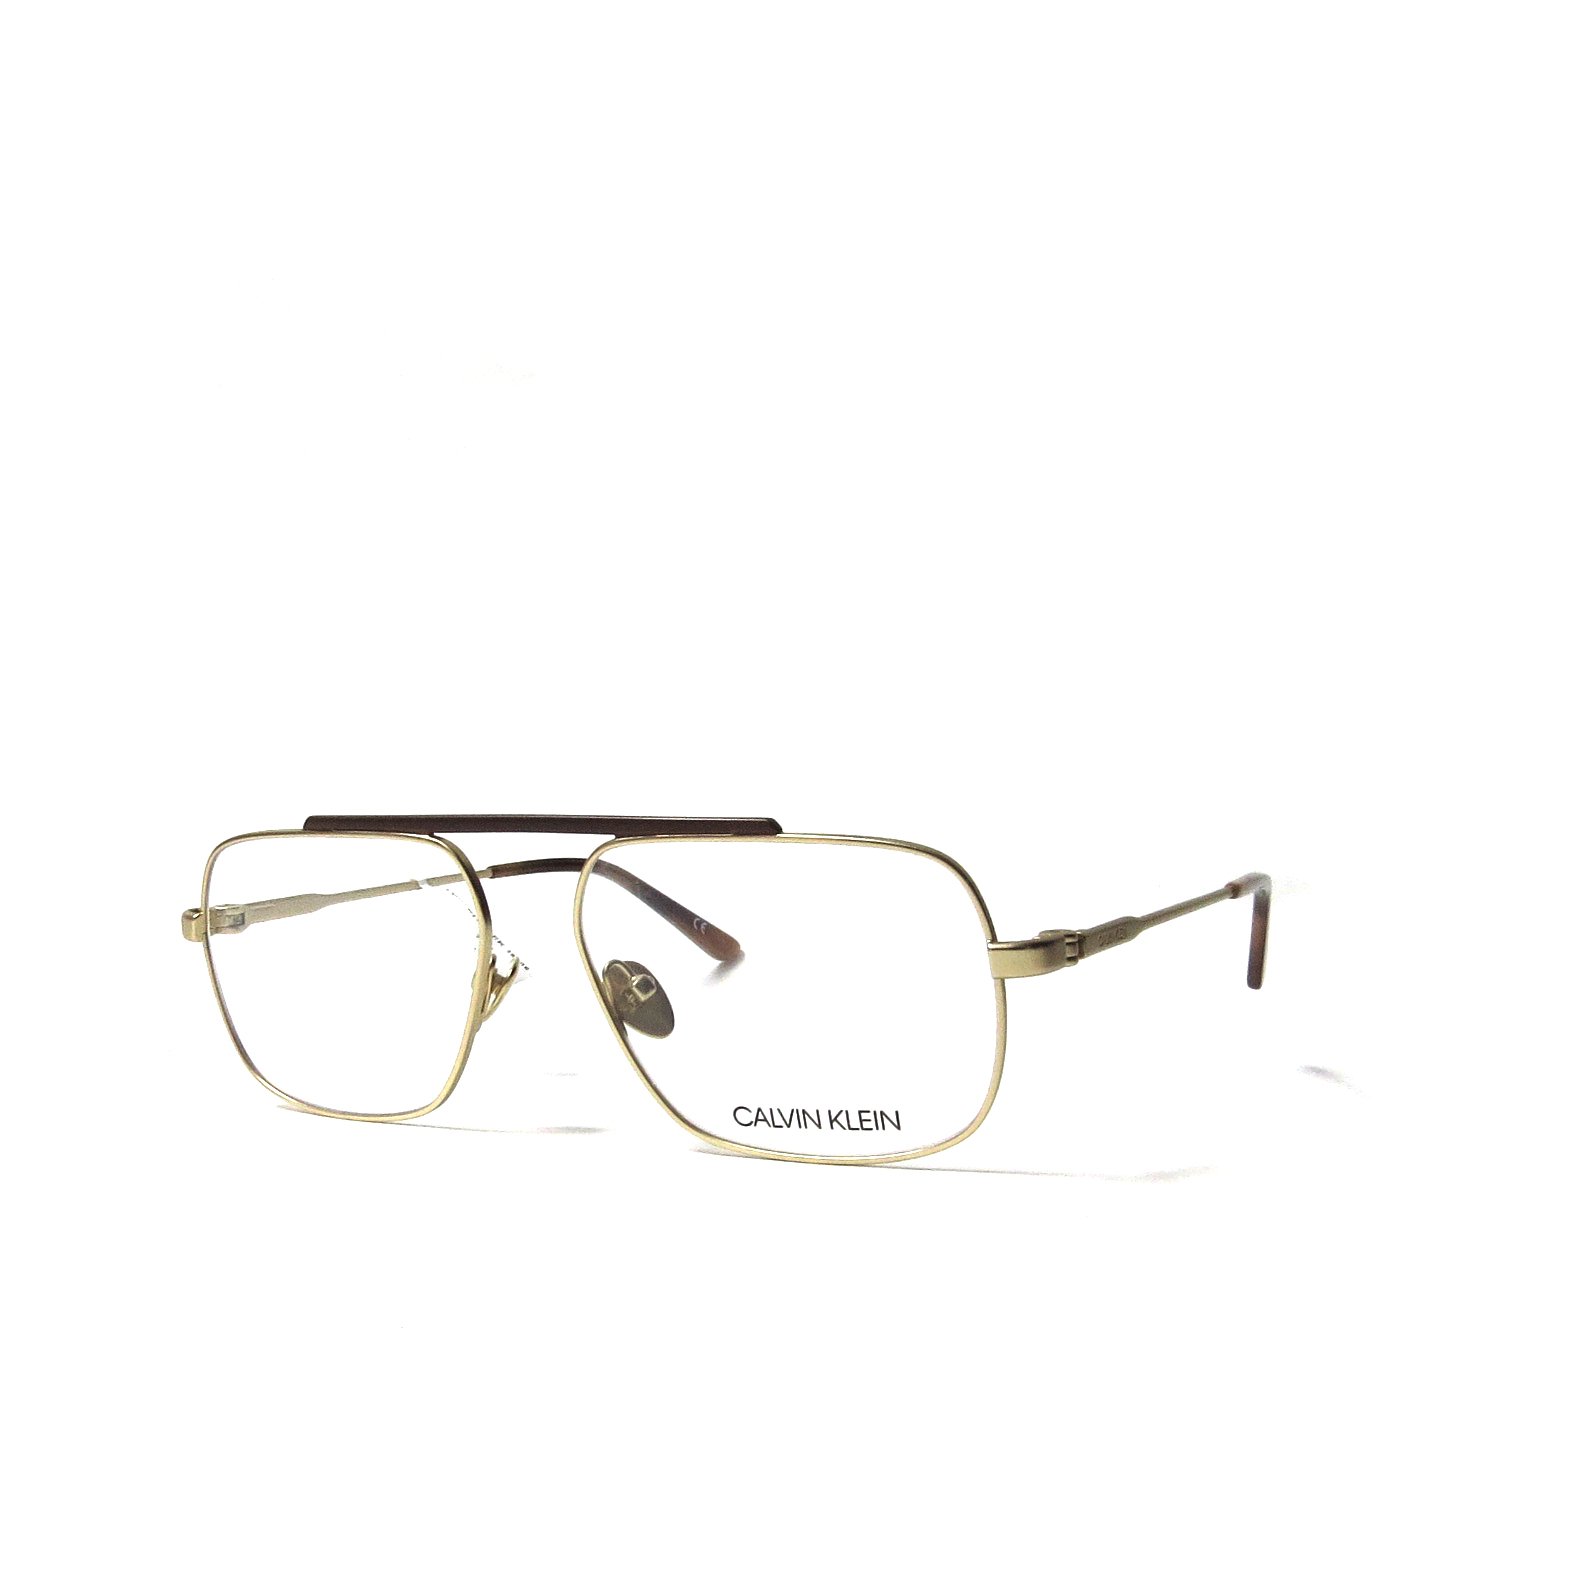 Óptica gafas | KLEIN - 18106 - Óptica las gafas